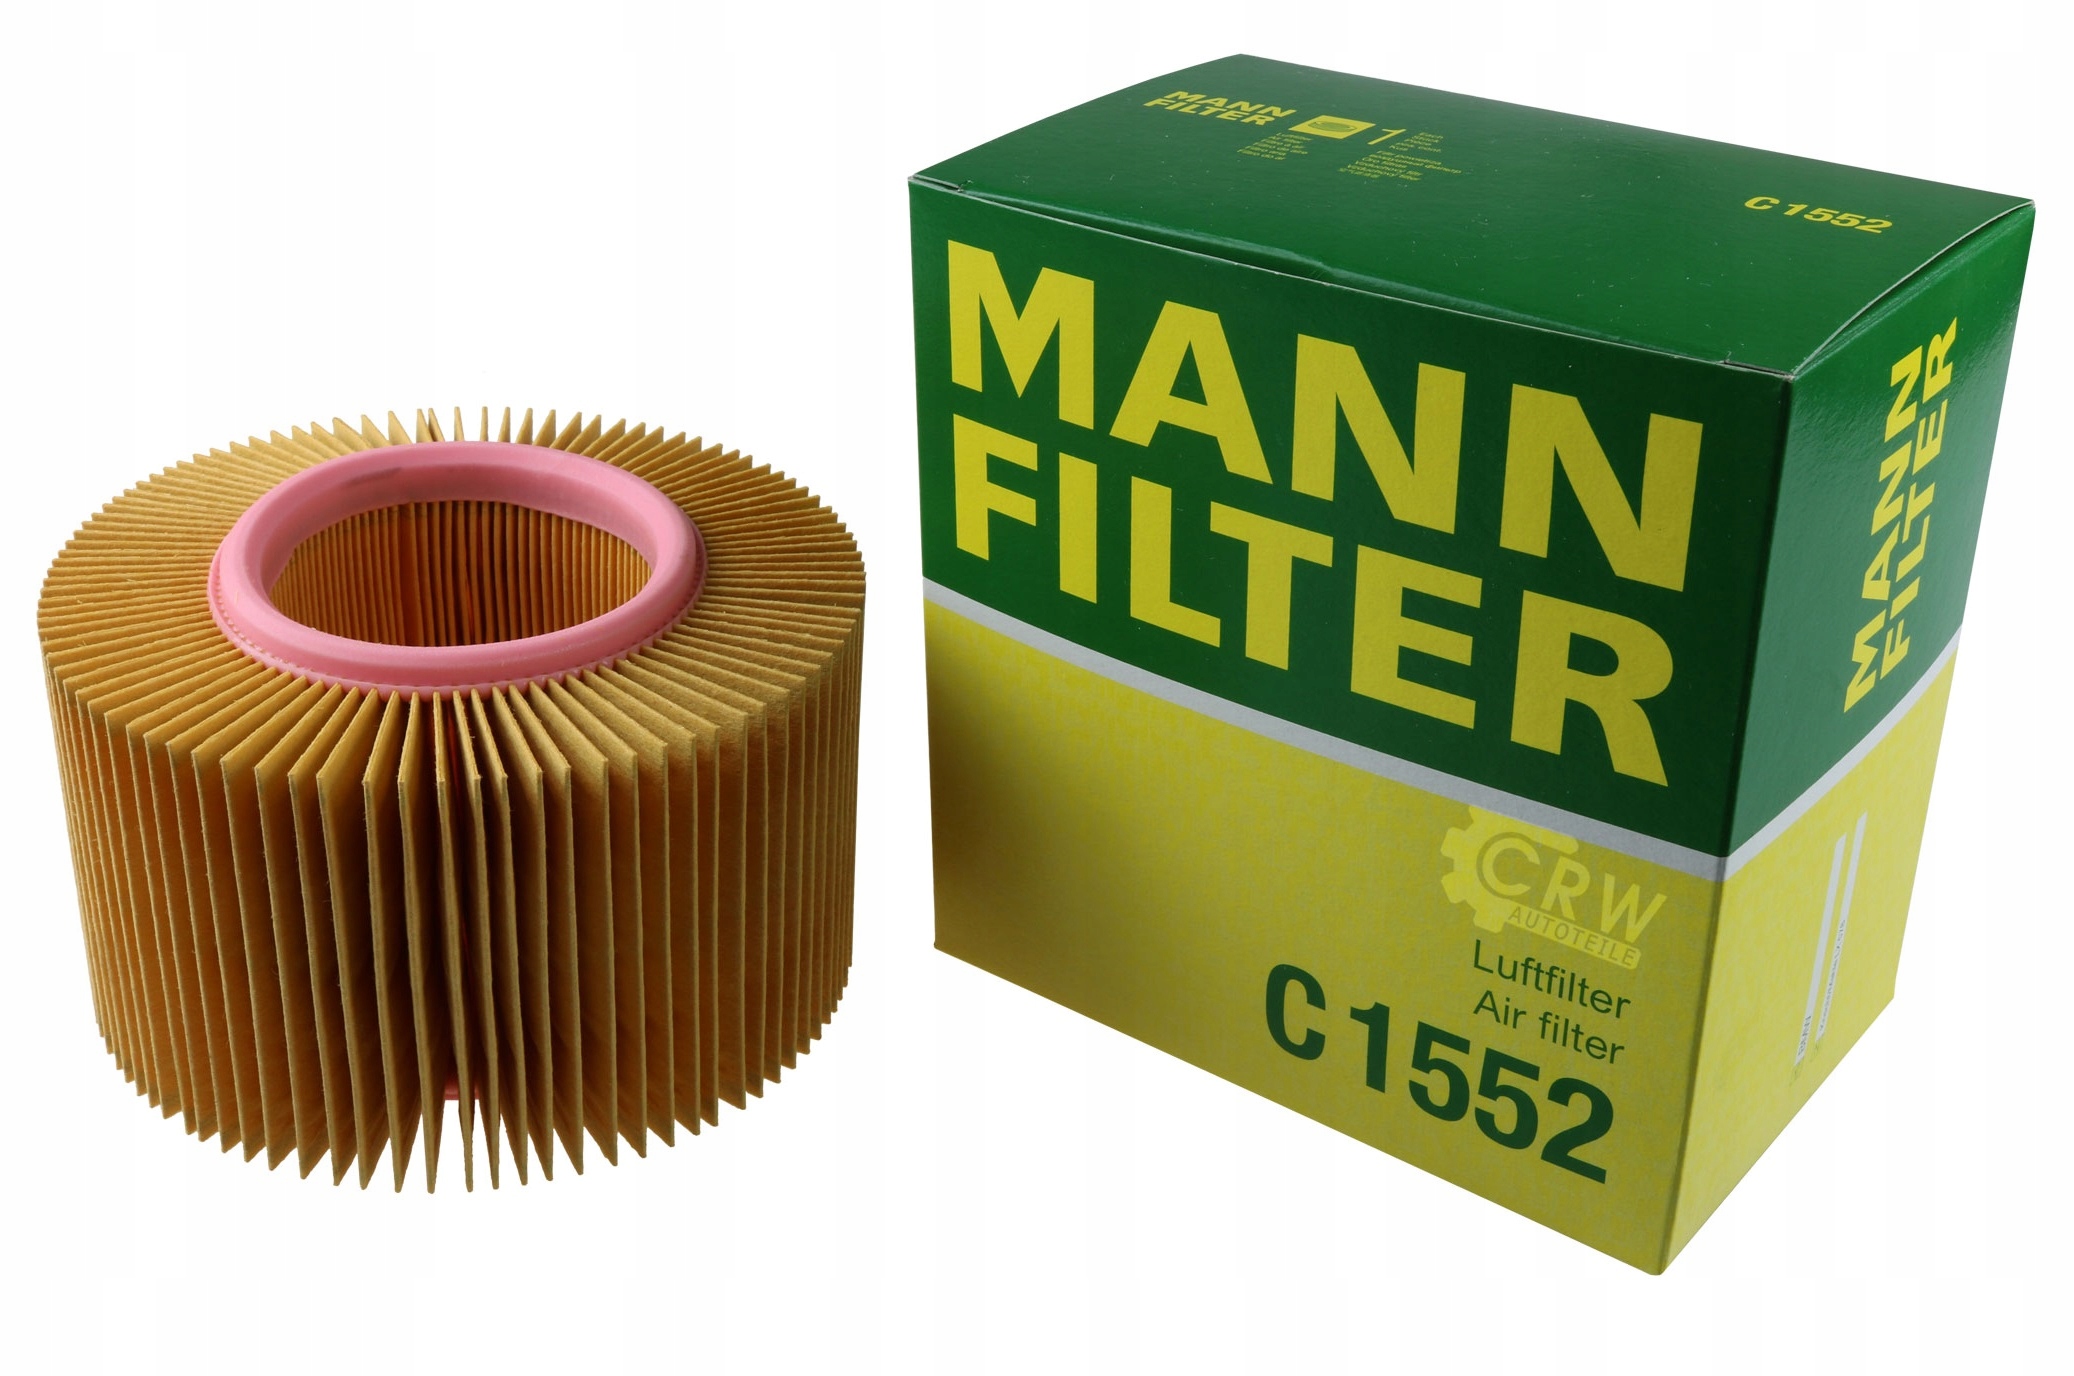 Mann filter воздушный фильтр. Фильтр воздушный BMW r1150rt. Mann-Filter c 2420. Фильтр Манн воздушный f 2000. Фильтр масляный r1100rt.